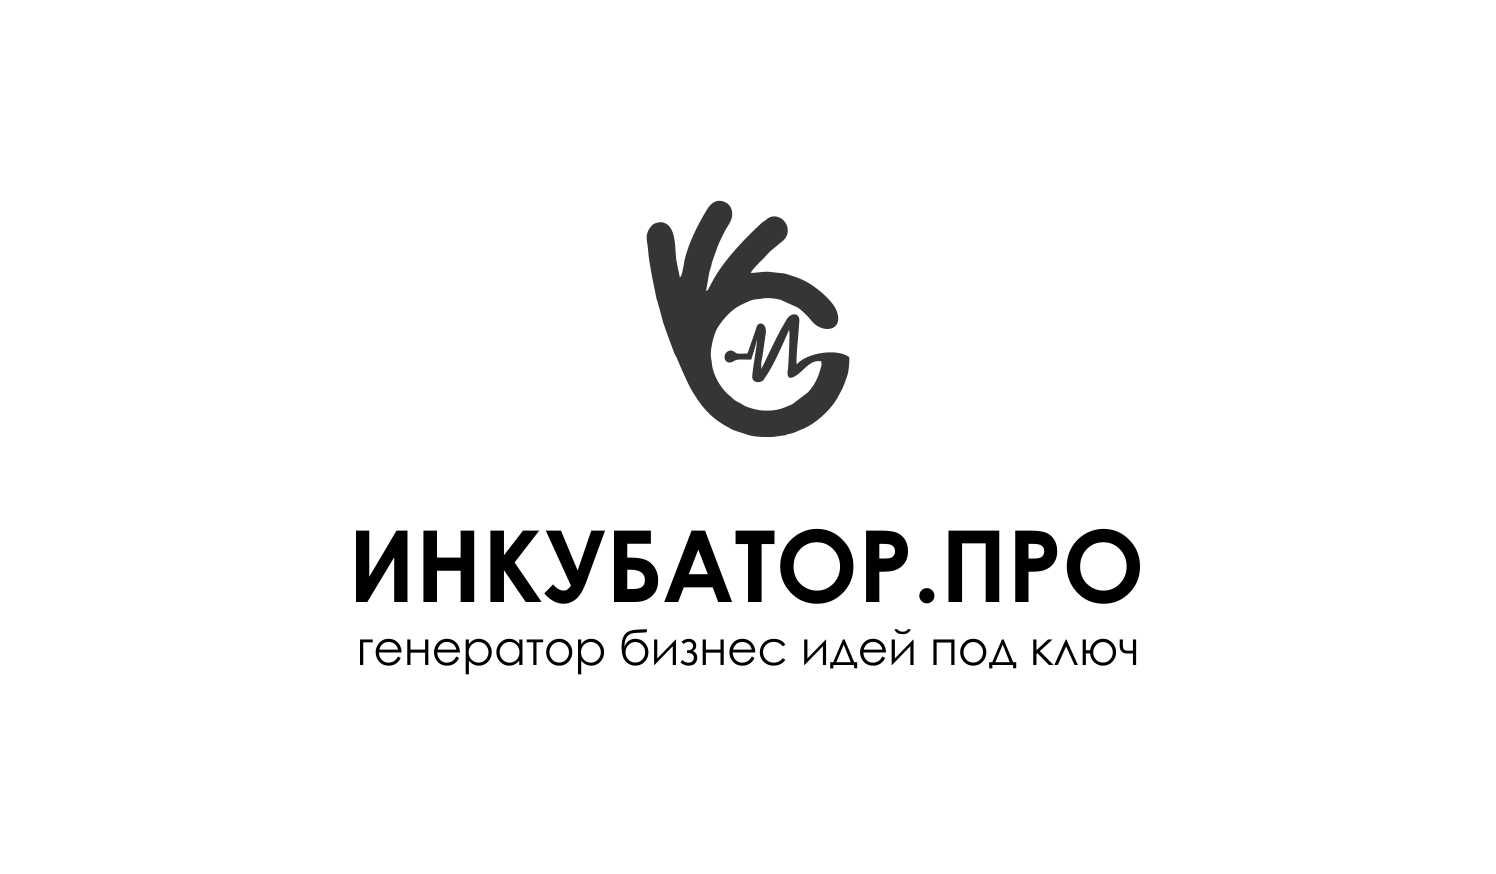 Логотип для инкубатор.про - дизайнер WebEkaterinA